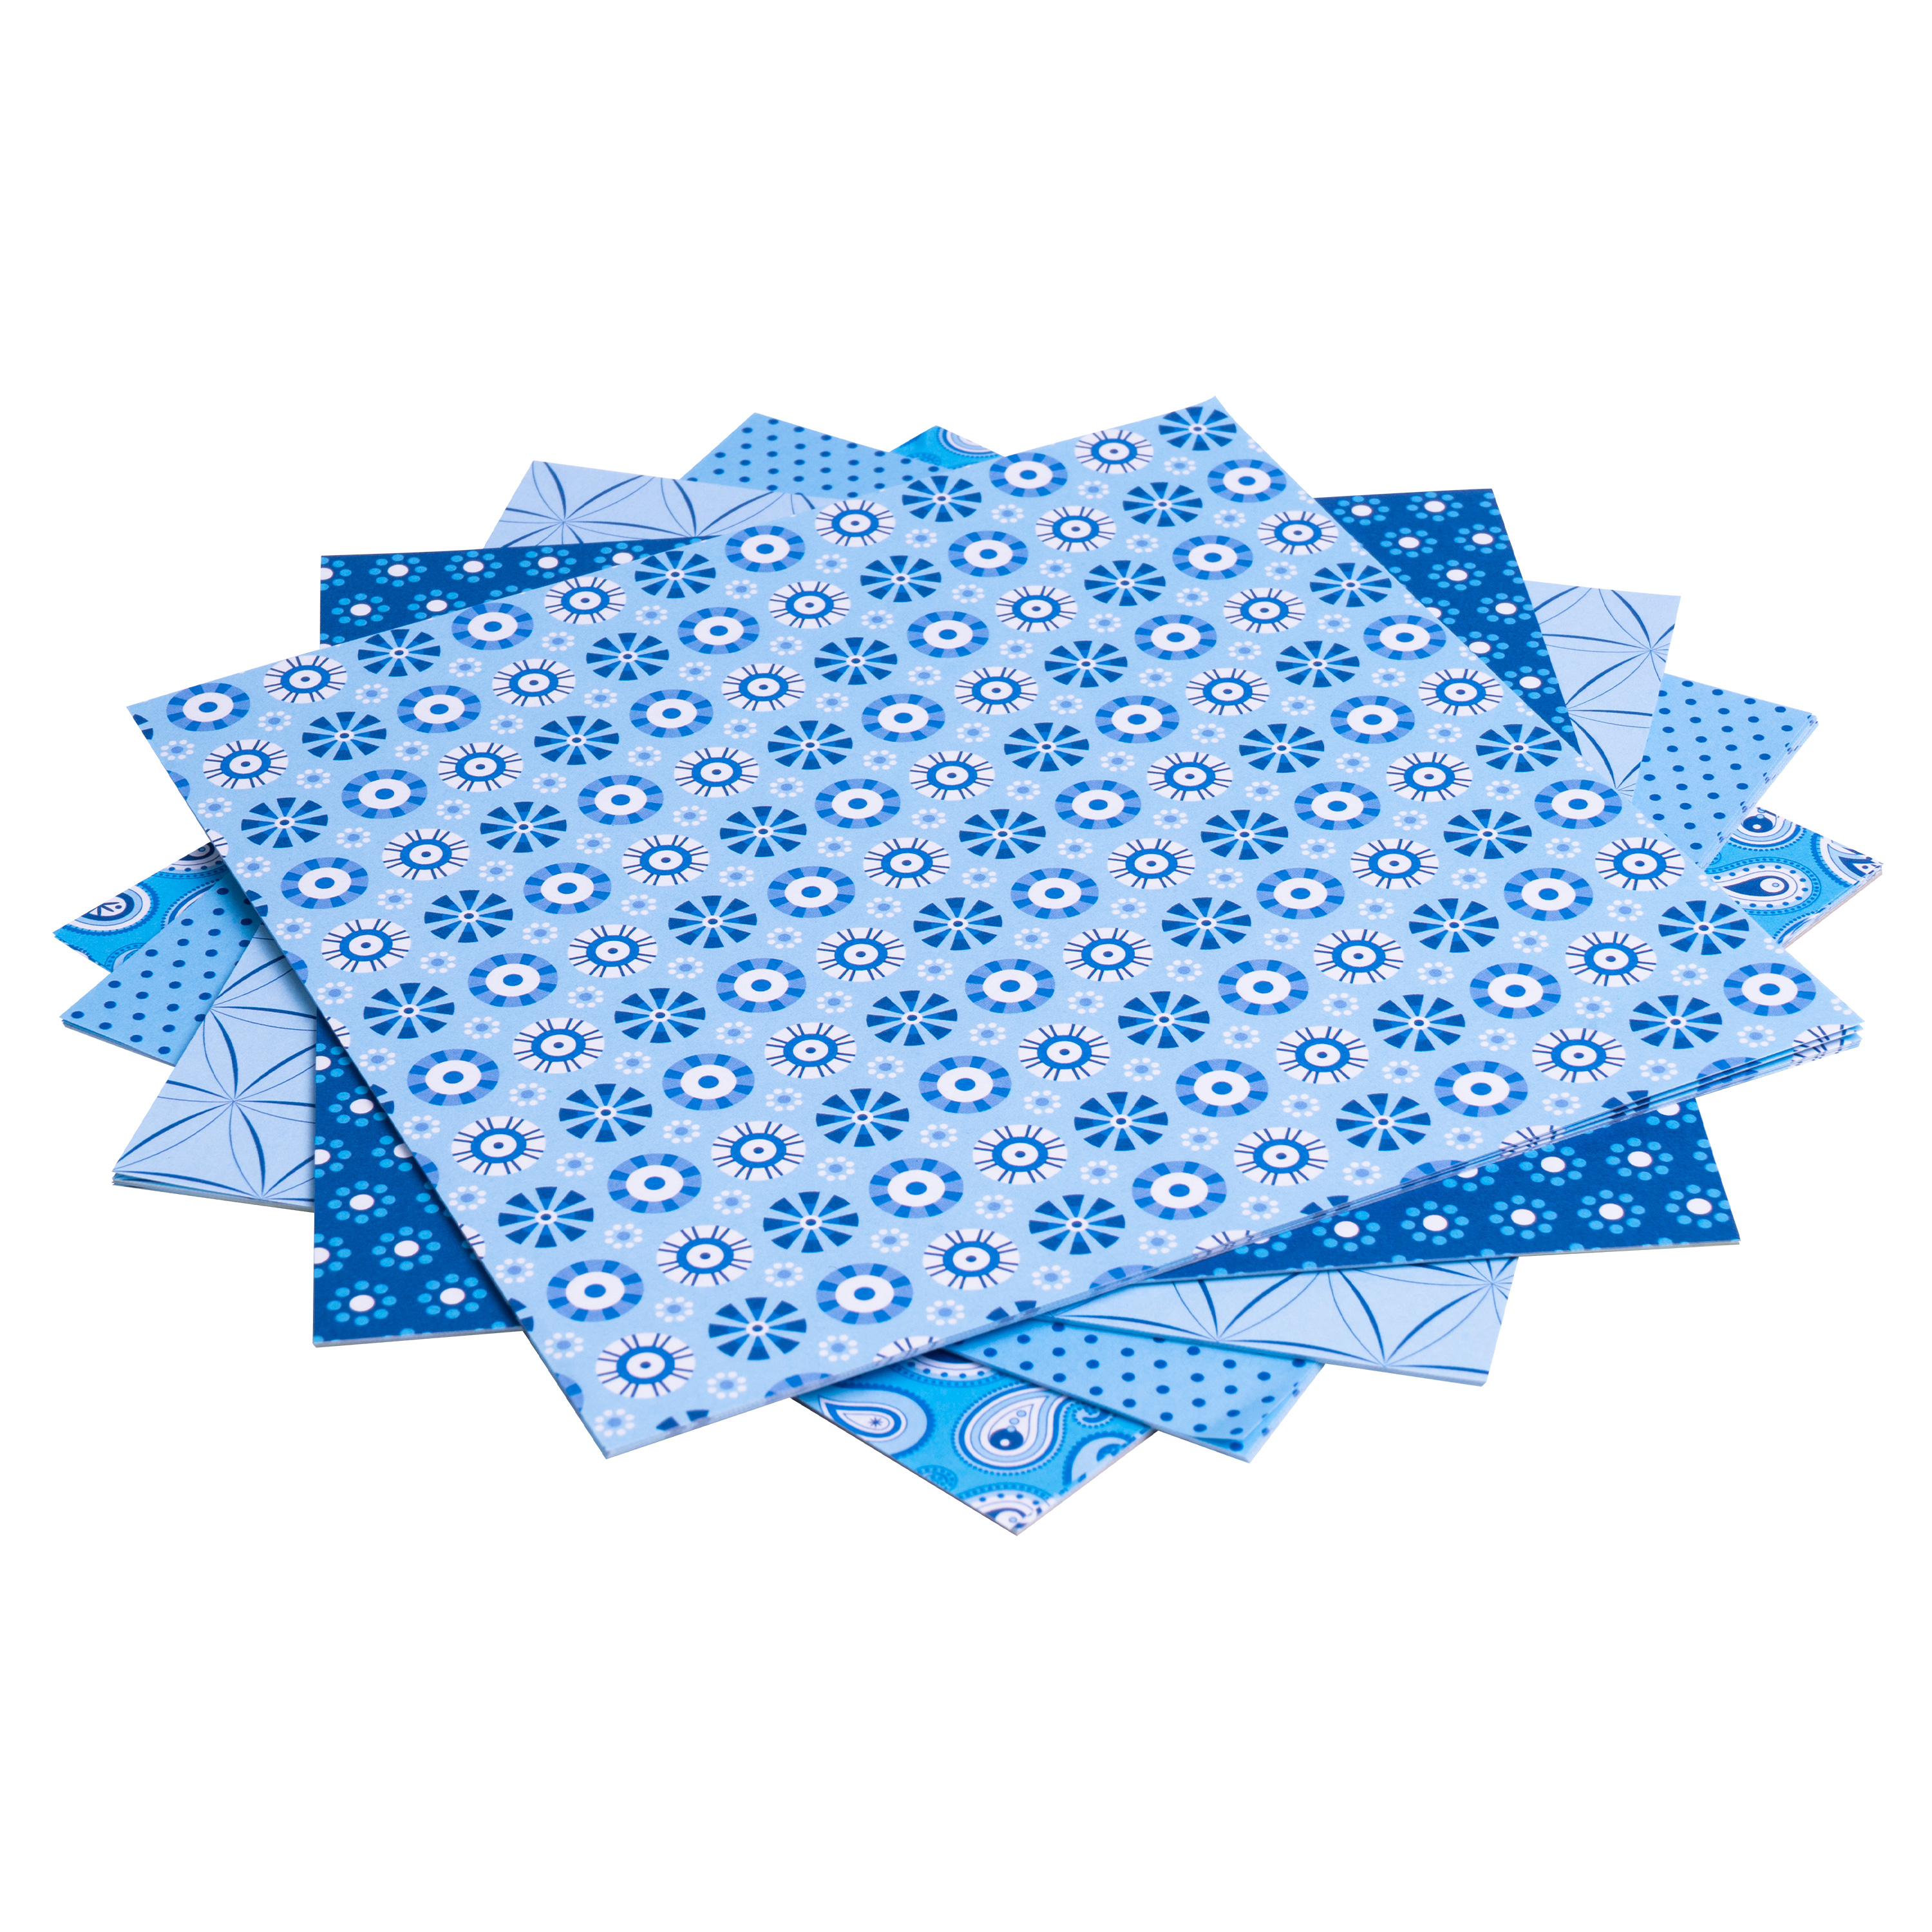 Origami Motiv-Faltblätter 'Basics', 20 x 20 cm, blau